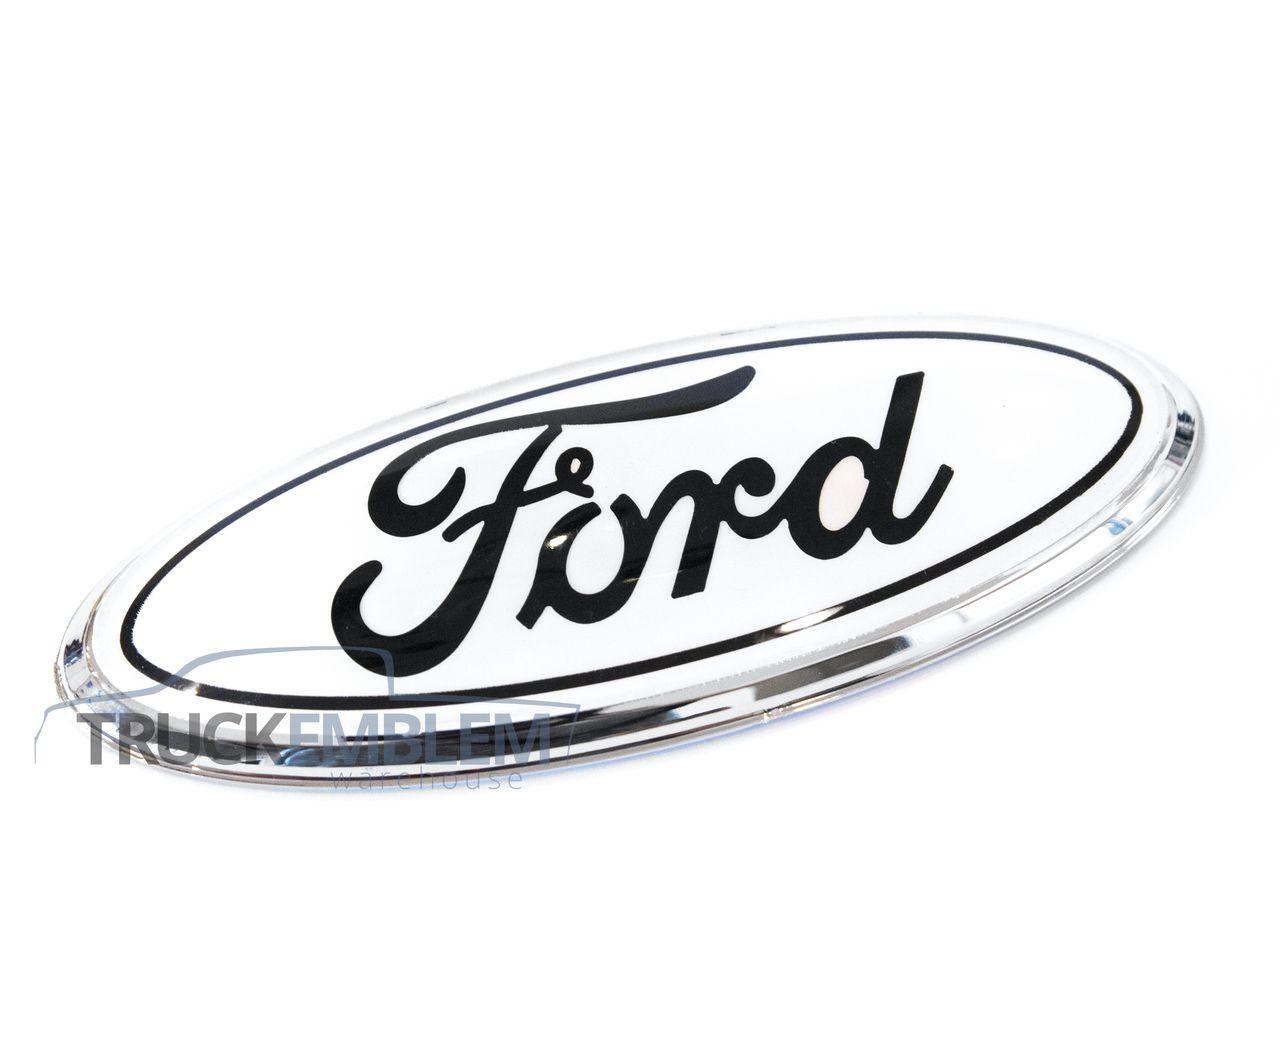 Black and White Ford Diesel Logo - 1 NEW CUSTOM WHITE CHROME & BLACK 99-04 FORD 7